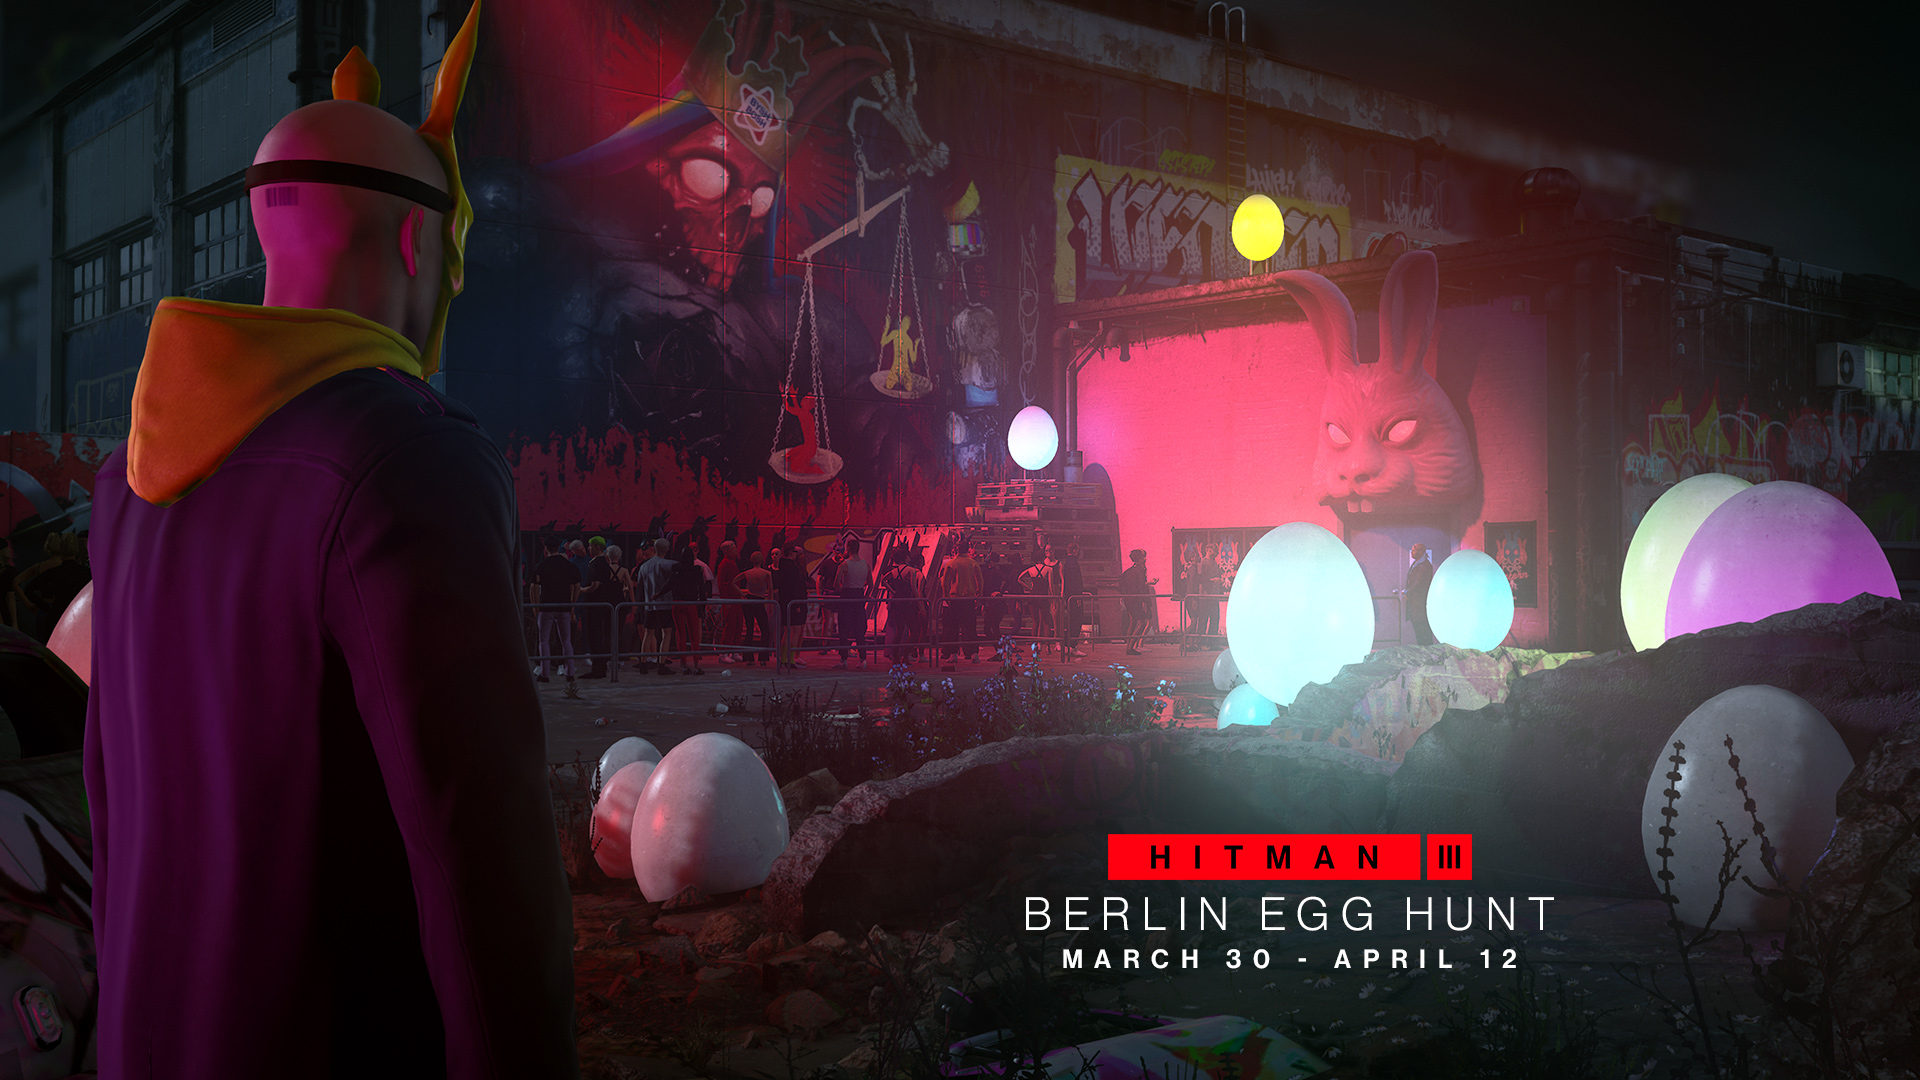 لعبة Hitman 3 ستأتي بخريطة "Roadmap" مع حدث Berlin Egg Hunt والمزيد !